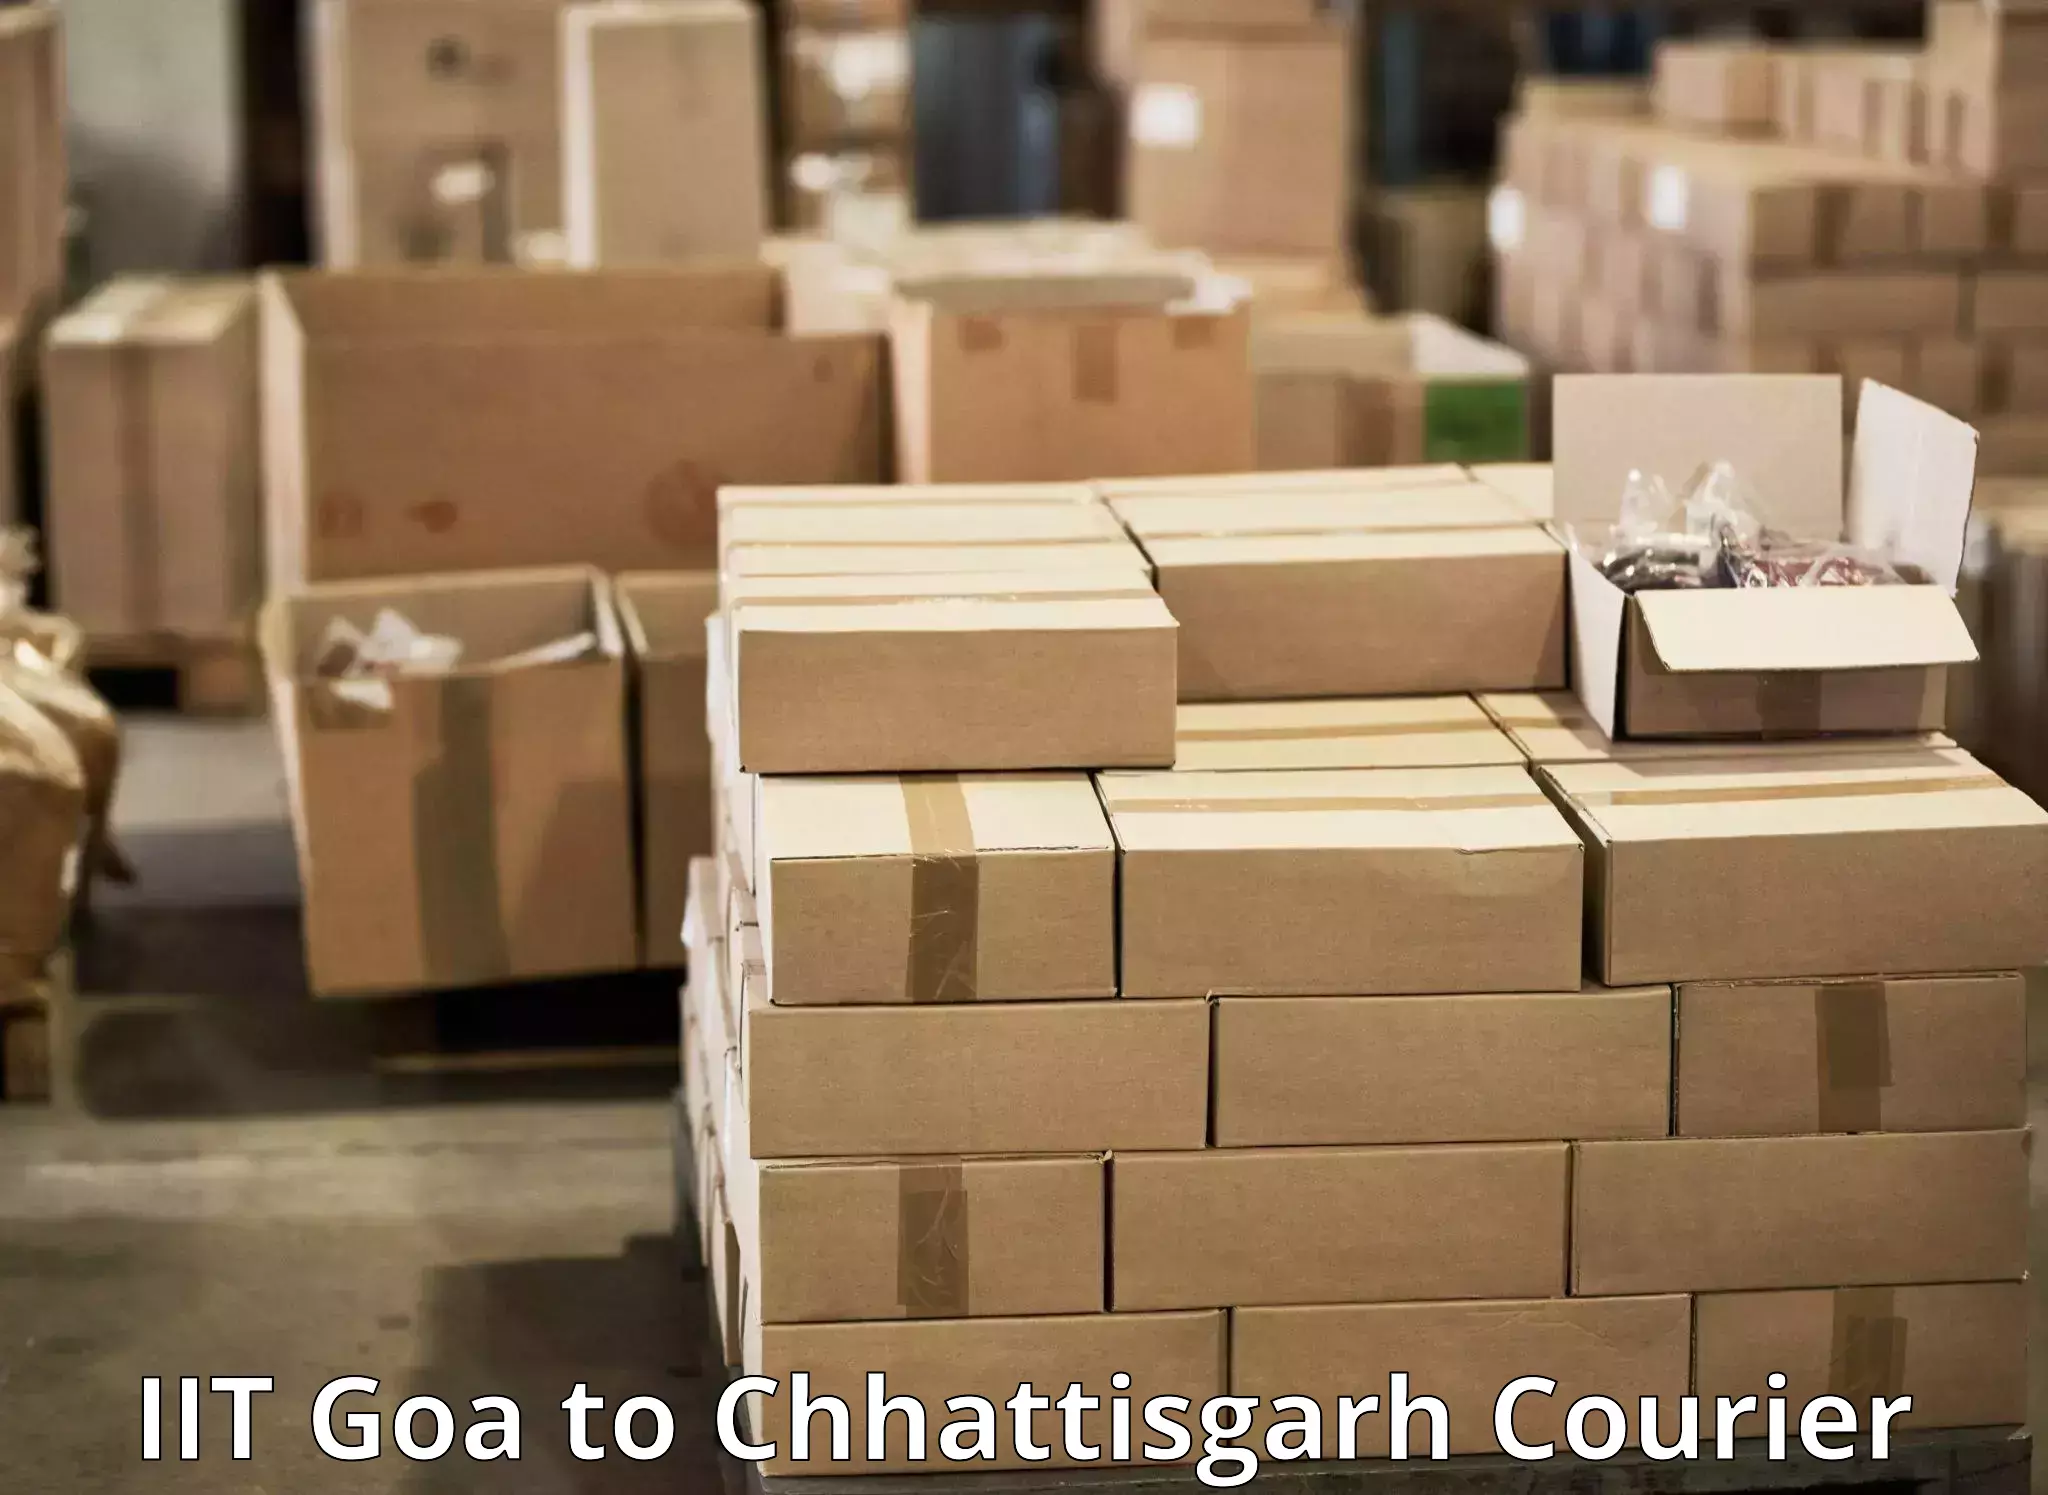 Doorstep delivery service IIT Goa to Kunkuri